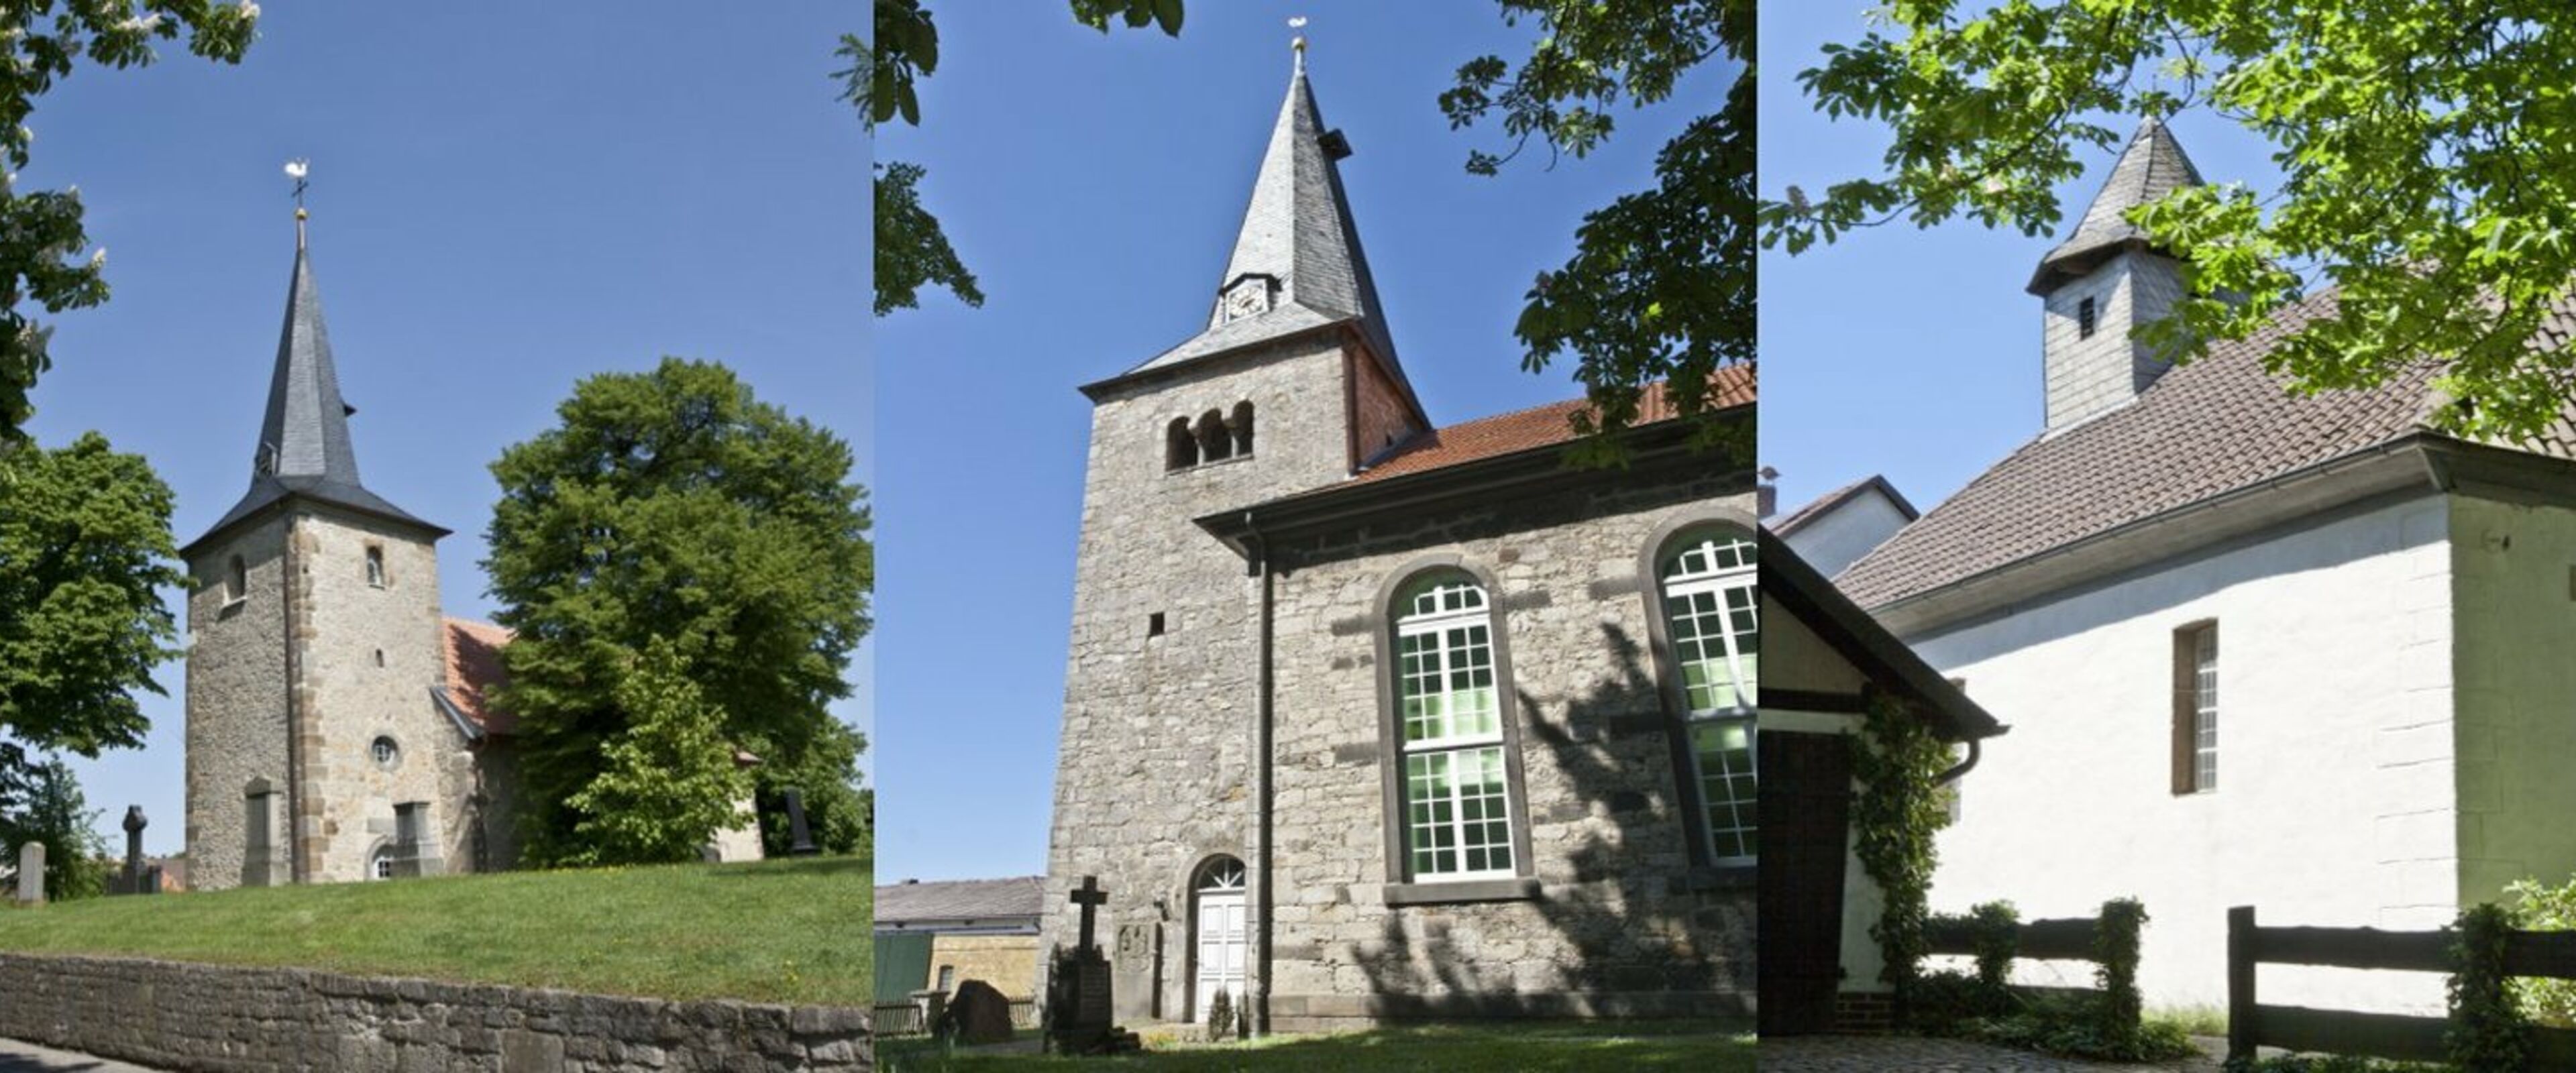 Collage für Startseite, Kirchen Gödringen, Oesselse, Ummeln